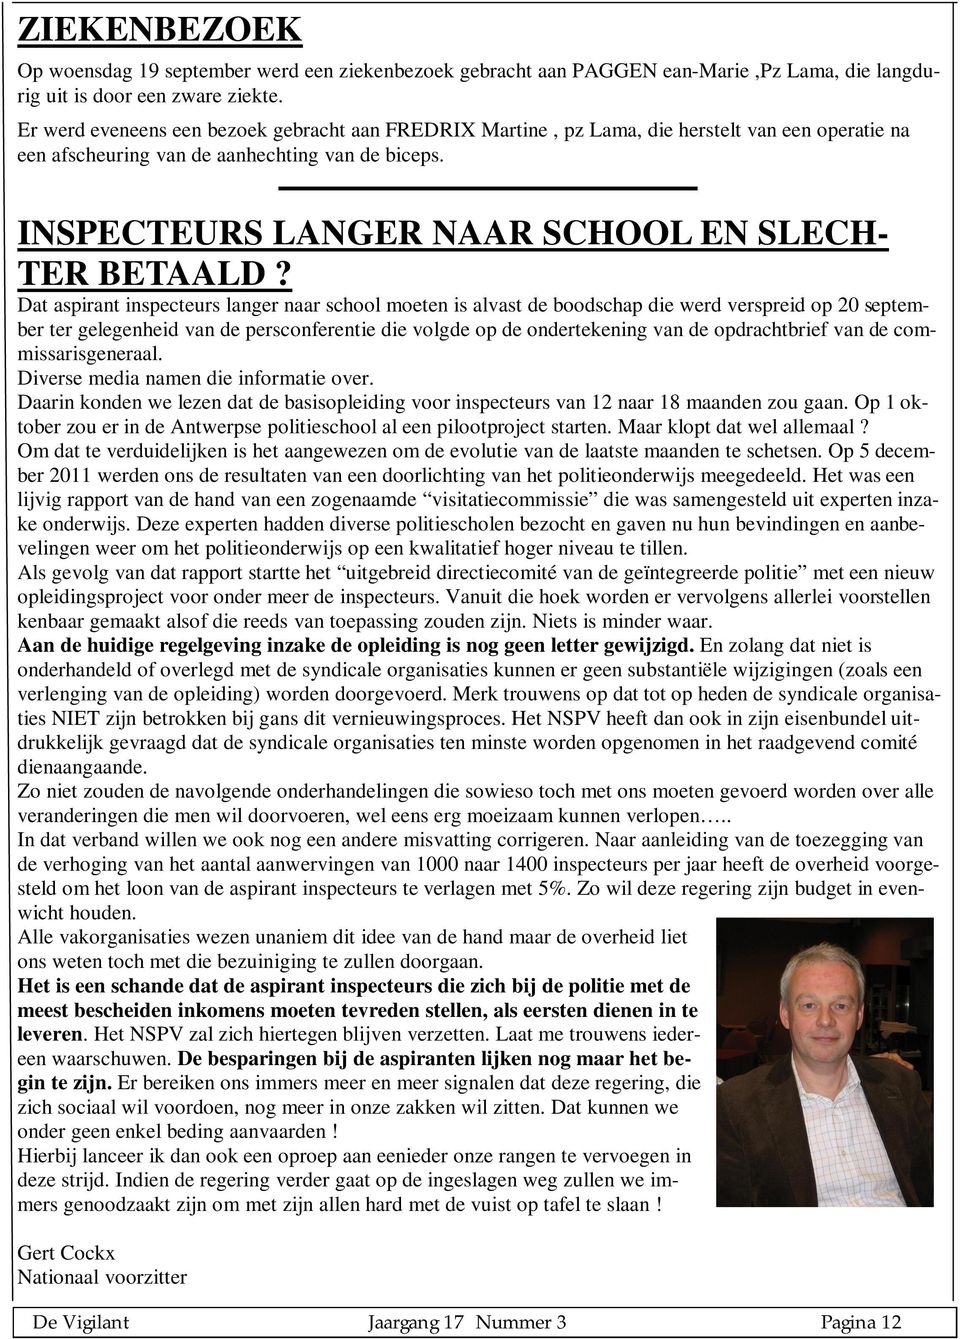 INSPECTEURS LANGER NAAR SCHOOL EN SLECH- TER BETAALD?